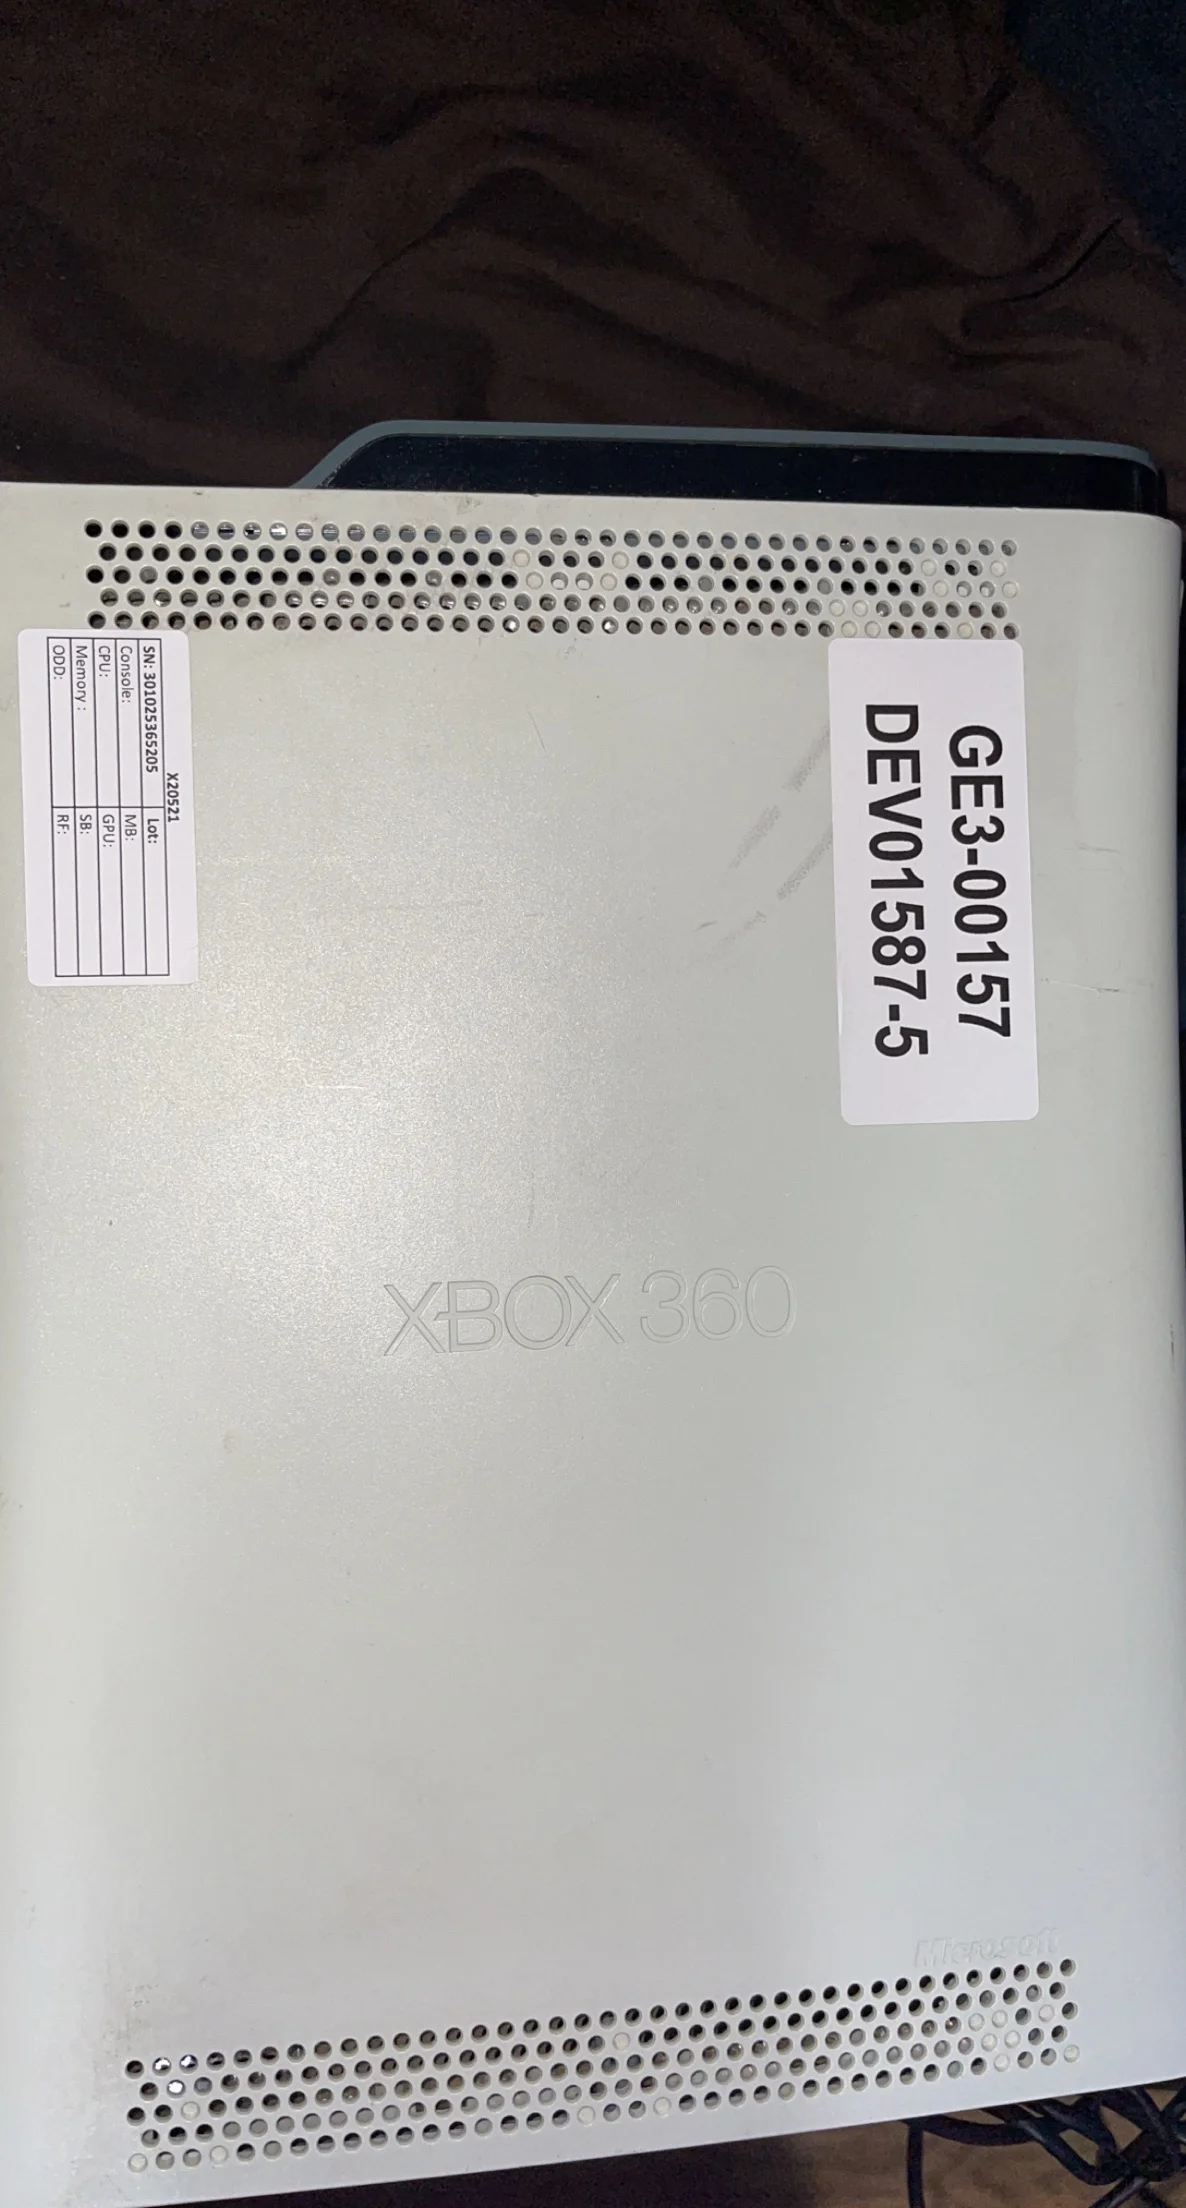 Microsoft Xbox 360 Xenon GE3-00042 DEV01300 Prototype Console 